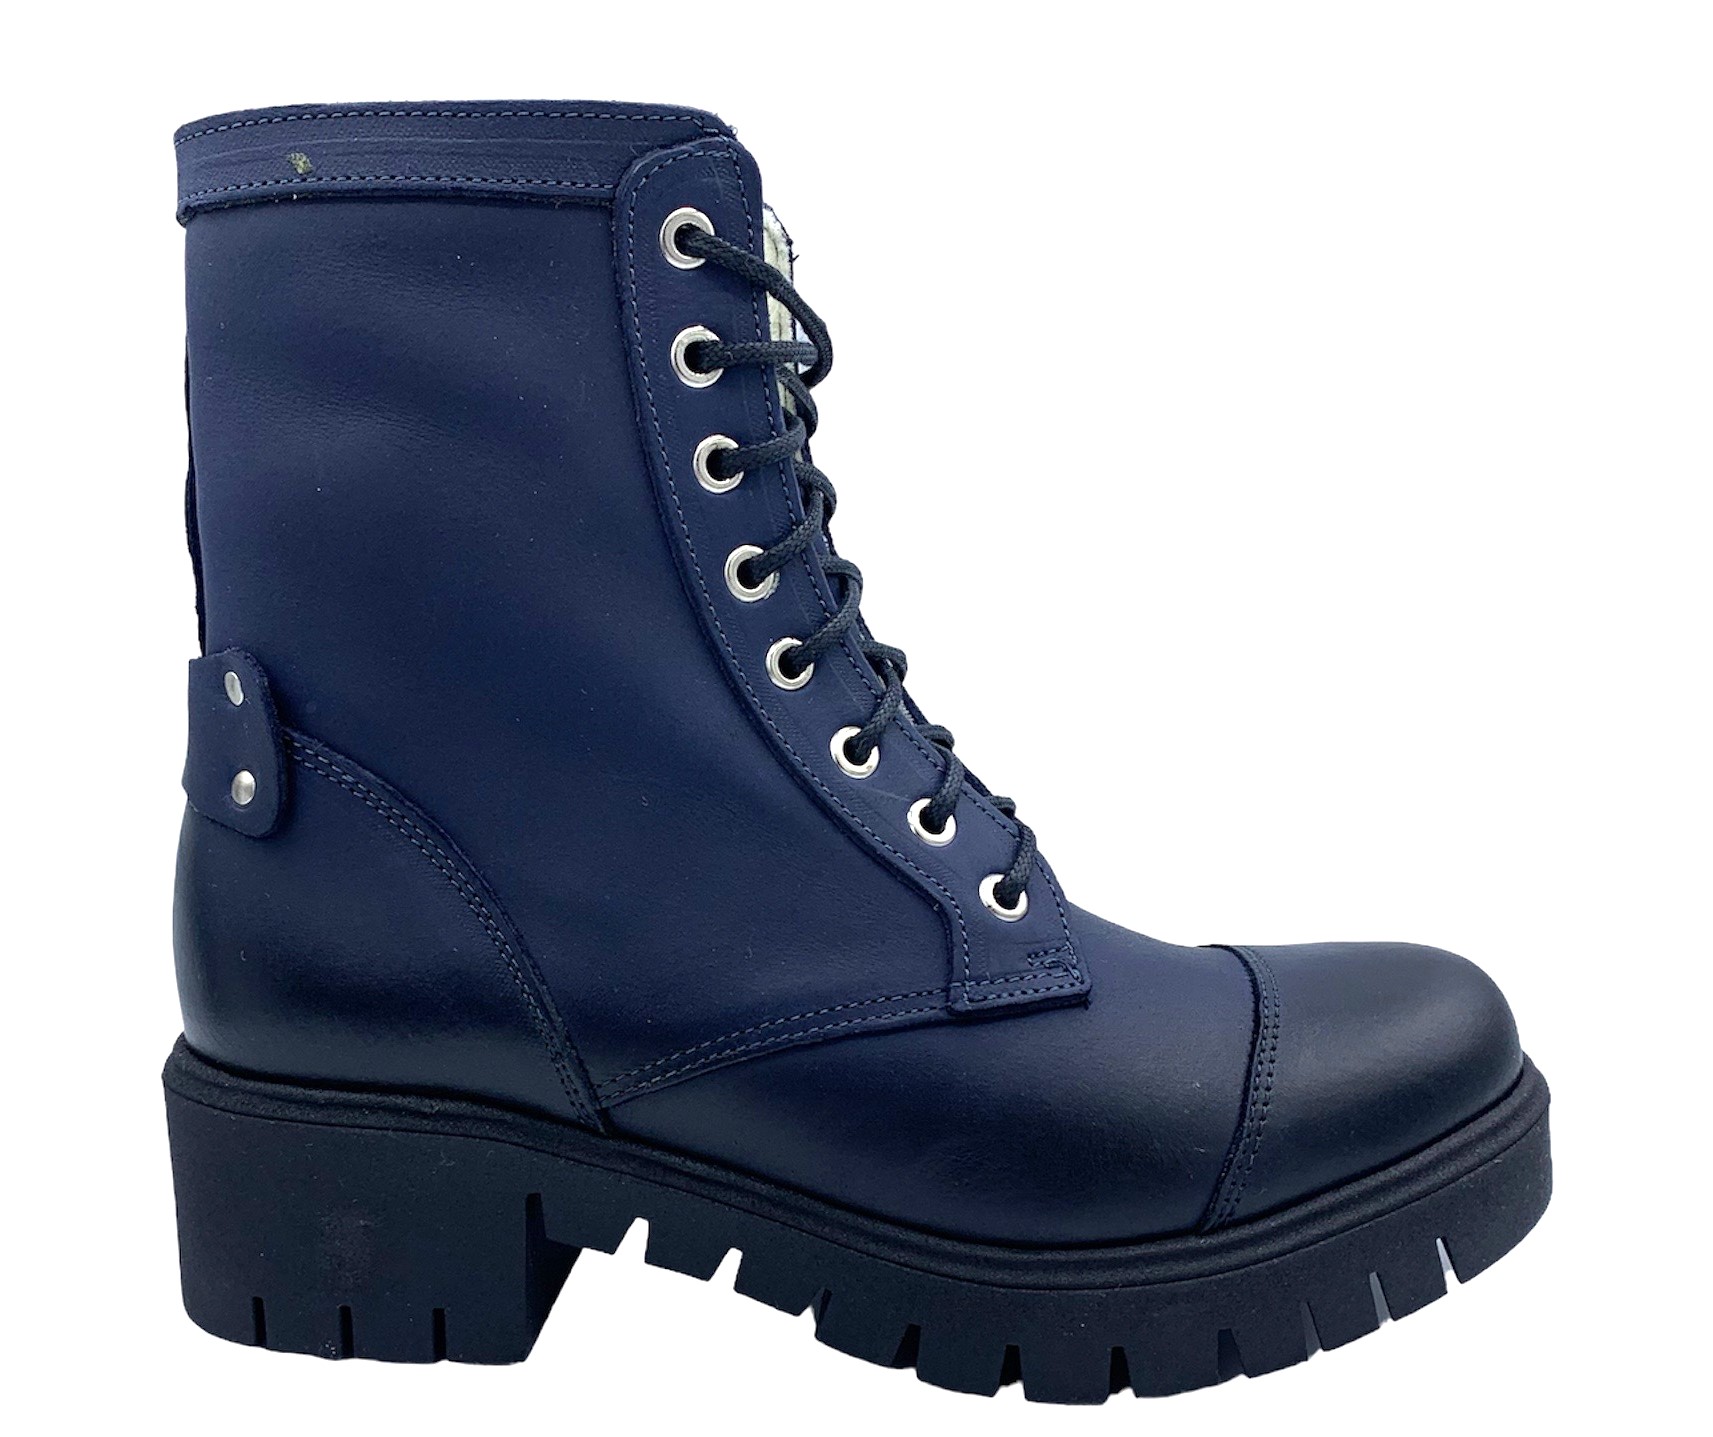 Dámská zimní obuv Hilby 1315 tm. modrá Velikost: 41 (EU)